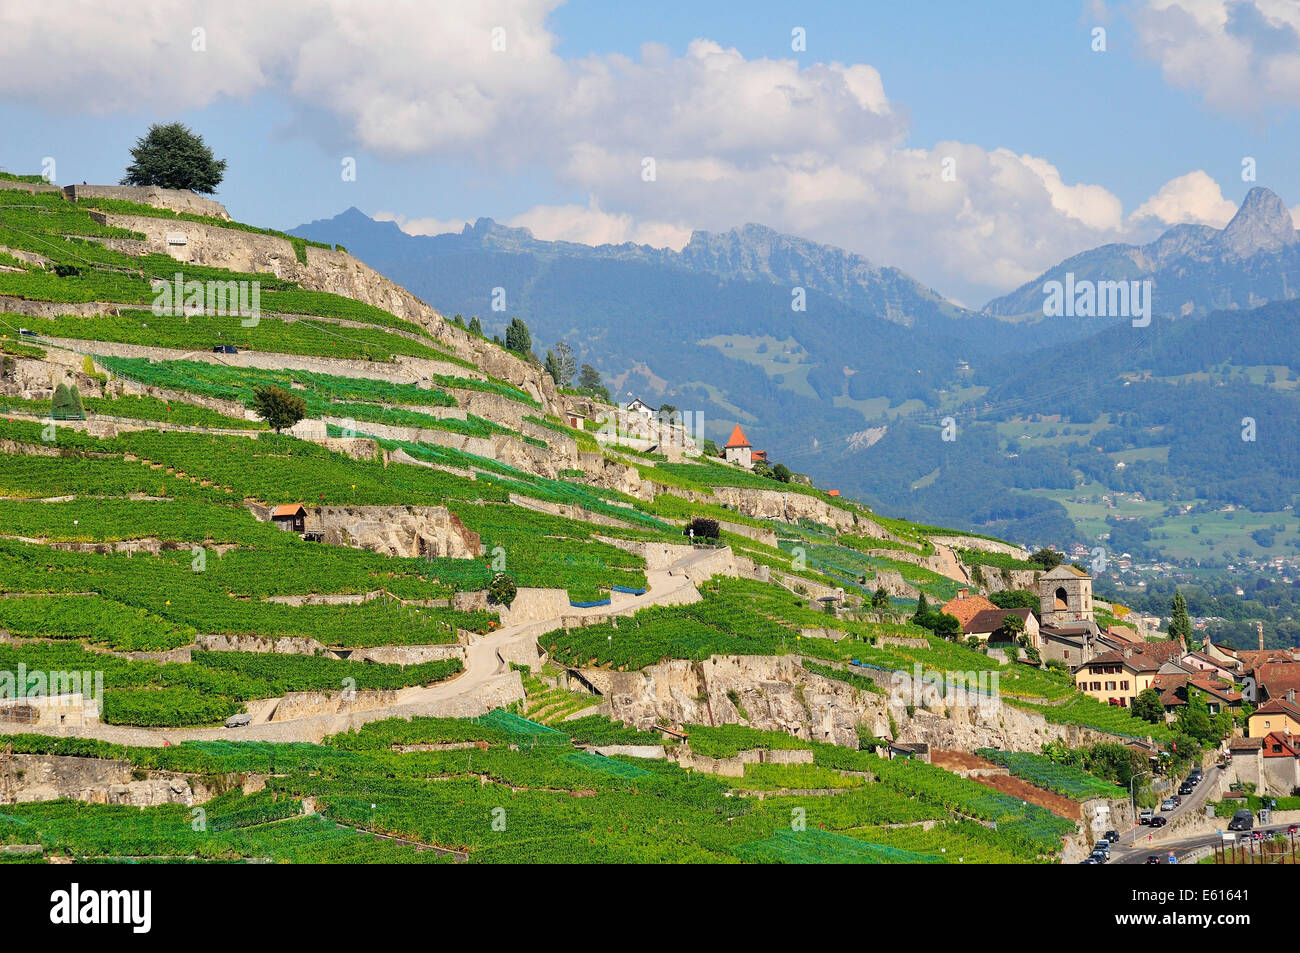 Vignobles en terrasses avec des arbres solitaires, le lac de Genève, Saint-Saphorin, Lavaux, Canton de Vaud, Suisse Banque D'Images